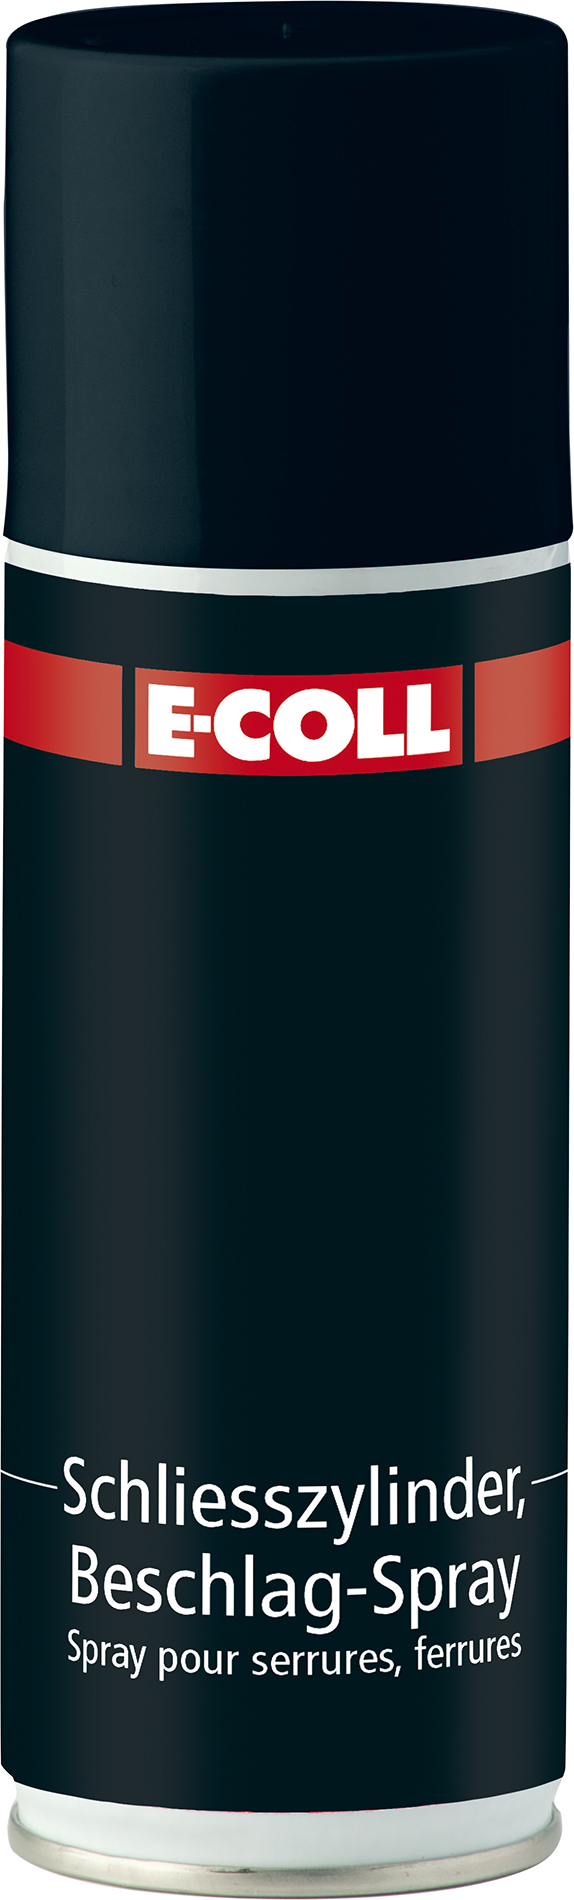 E-COLL Schließzylinder- und Beschlagspray 200 ml - bei  online  kaufen